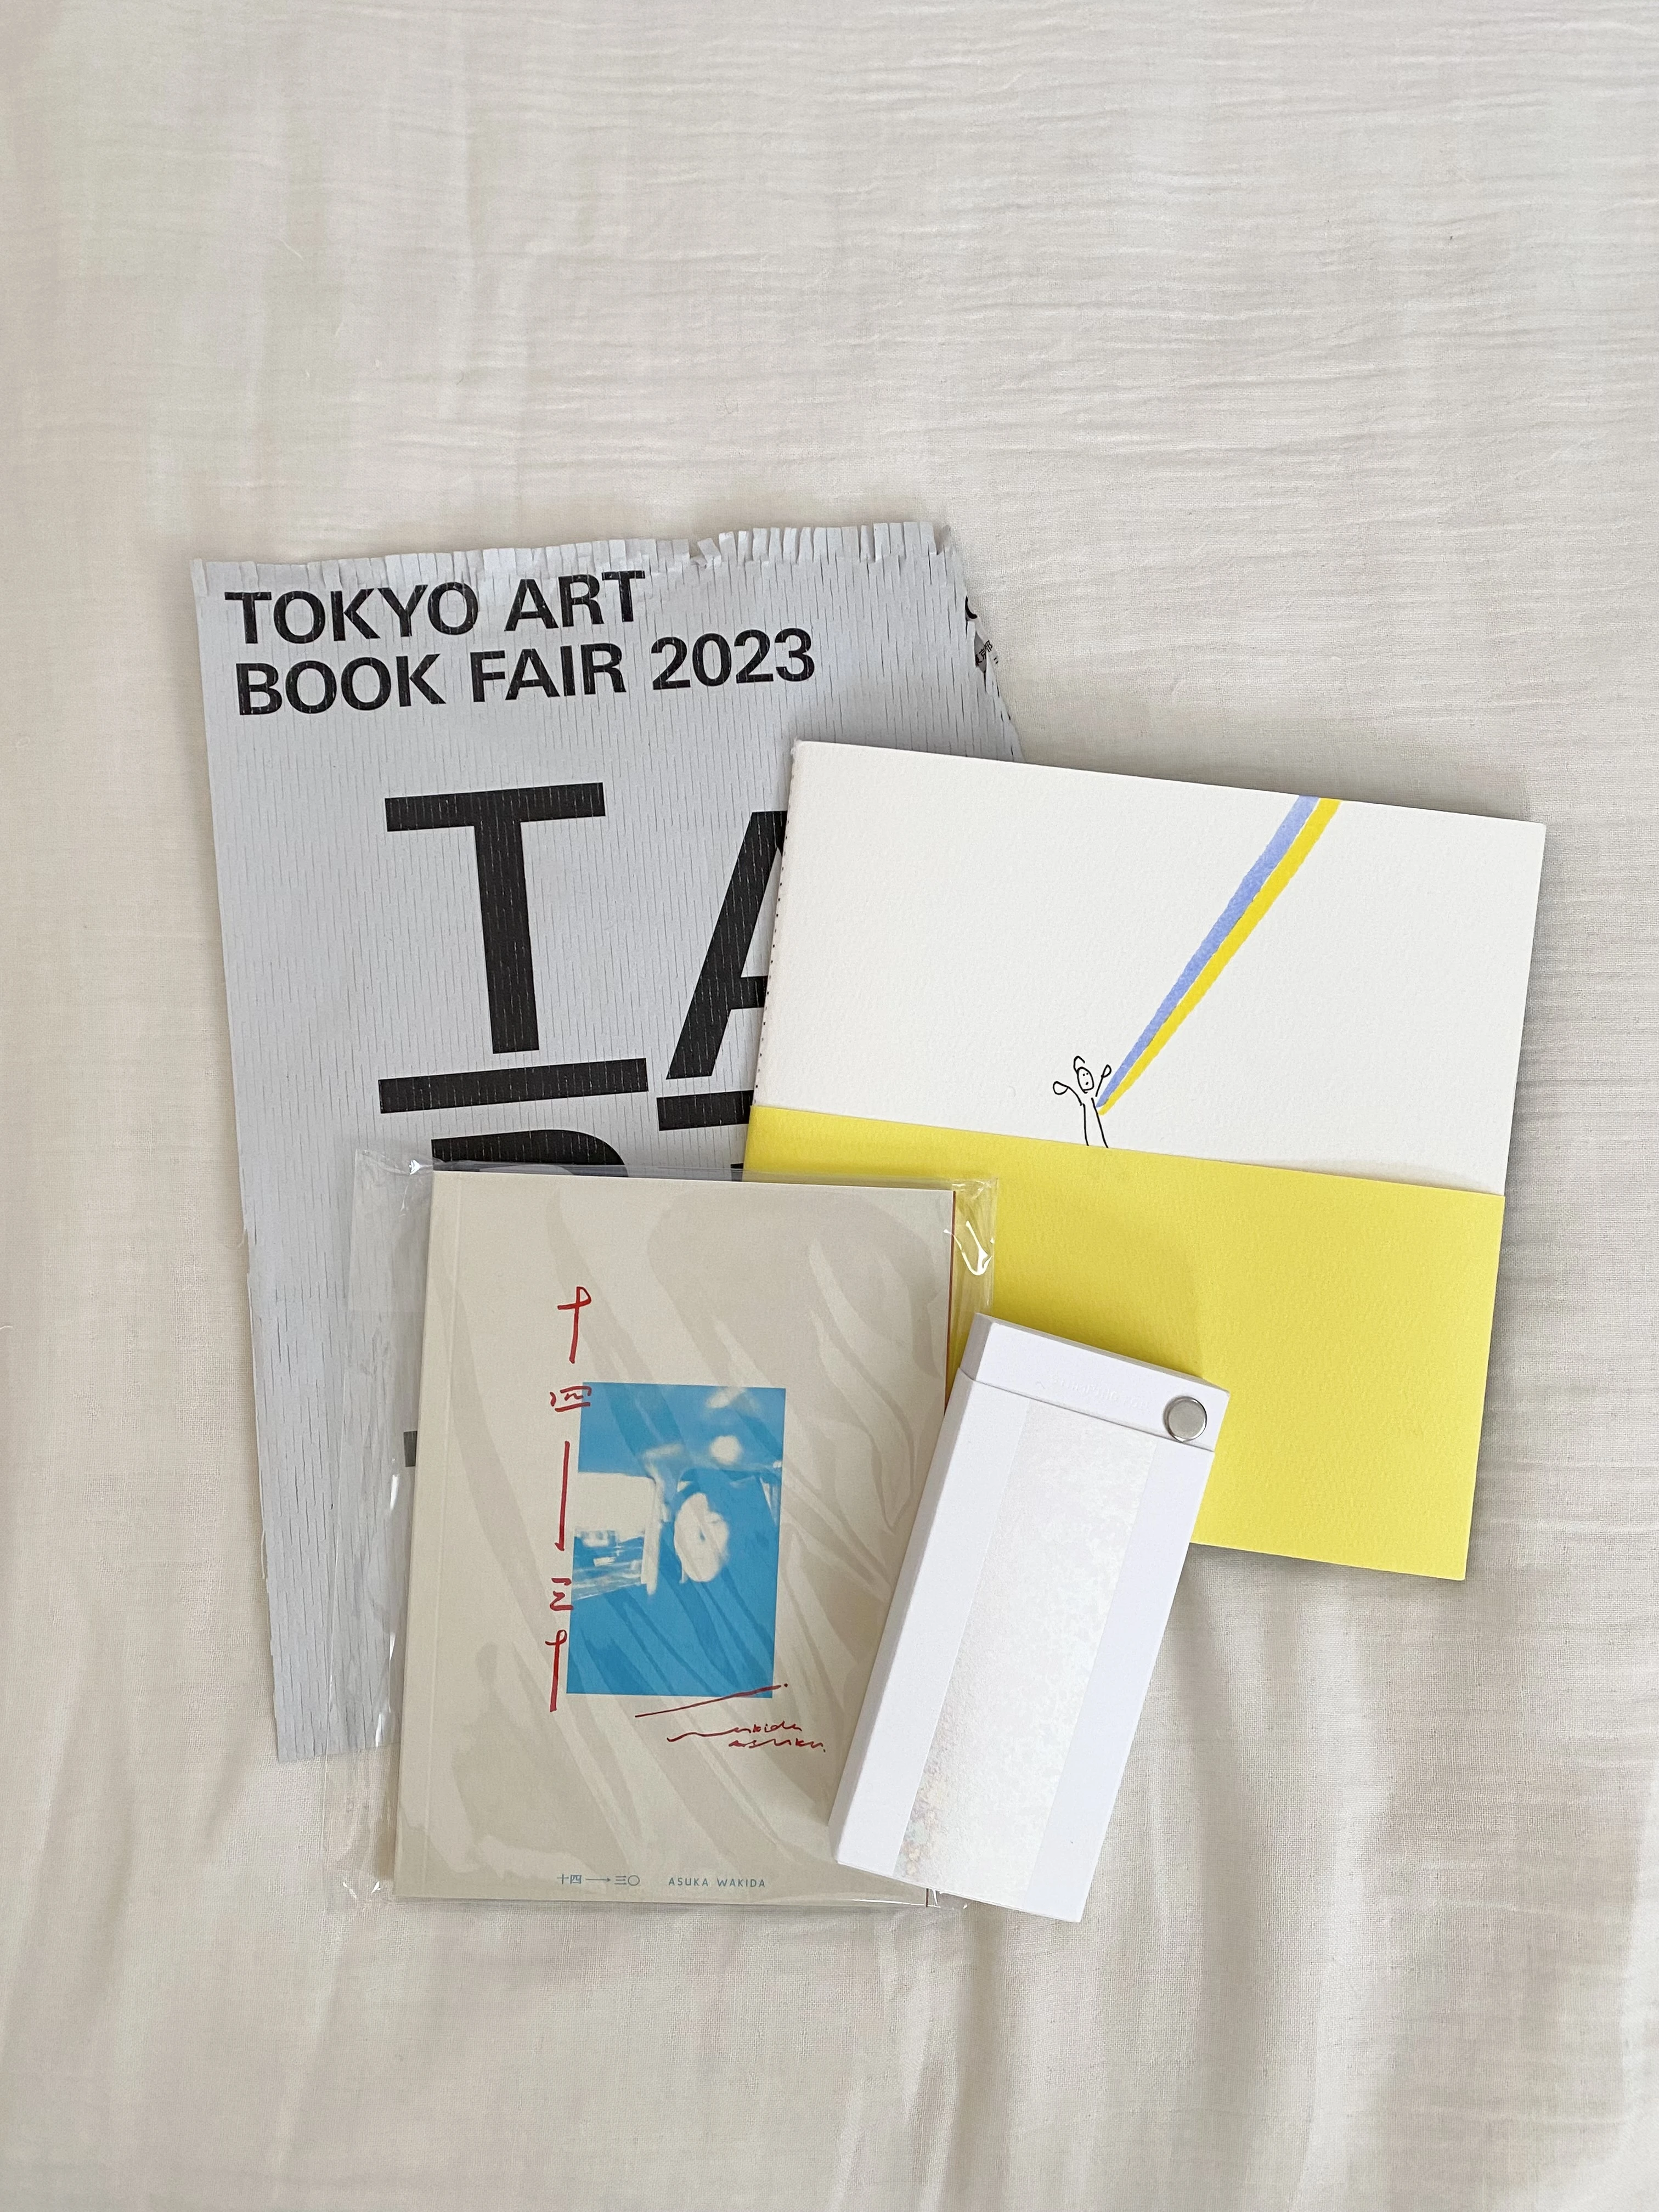 TOKYO ART BOOK FAIRの購入品。